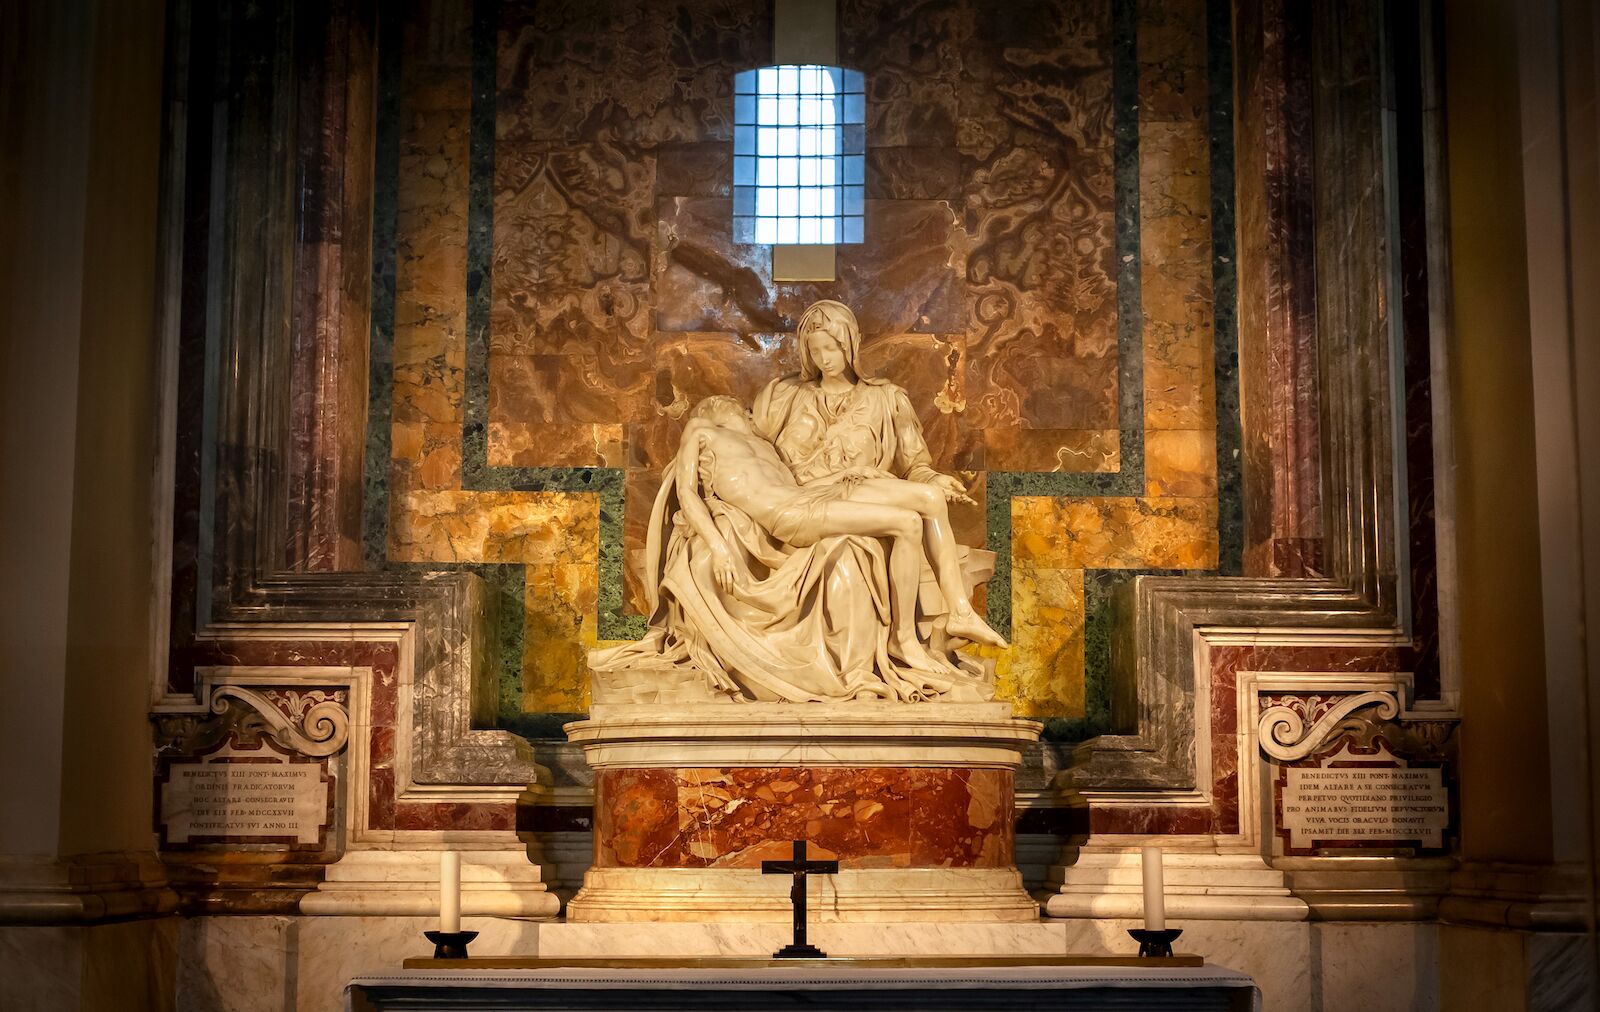 La Pieta by Michelangelo inside St. Peter's Basilica